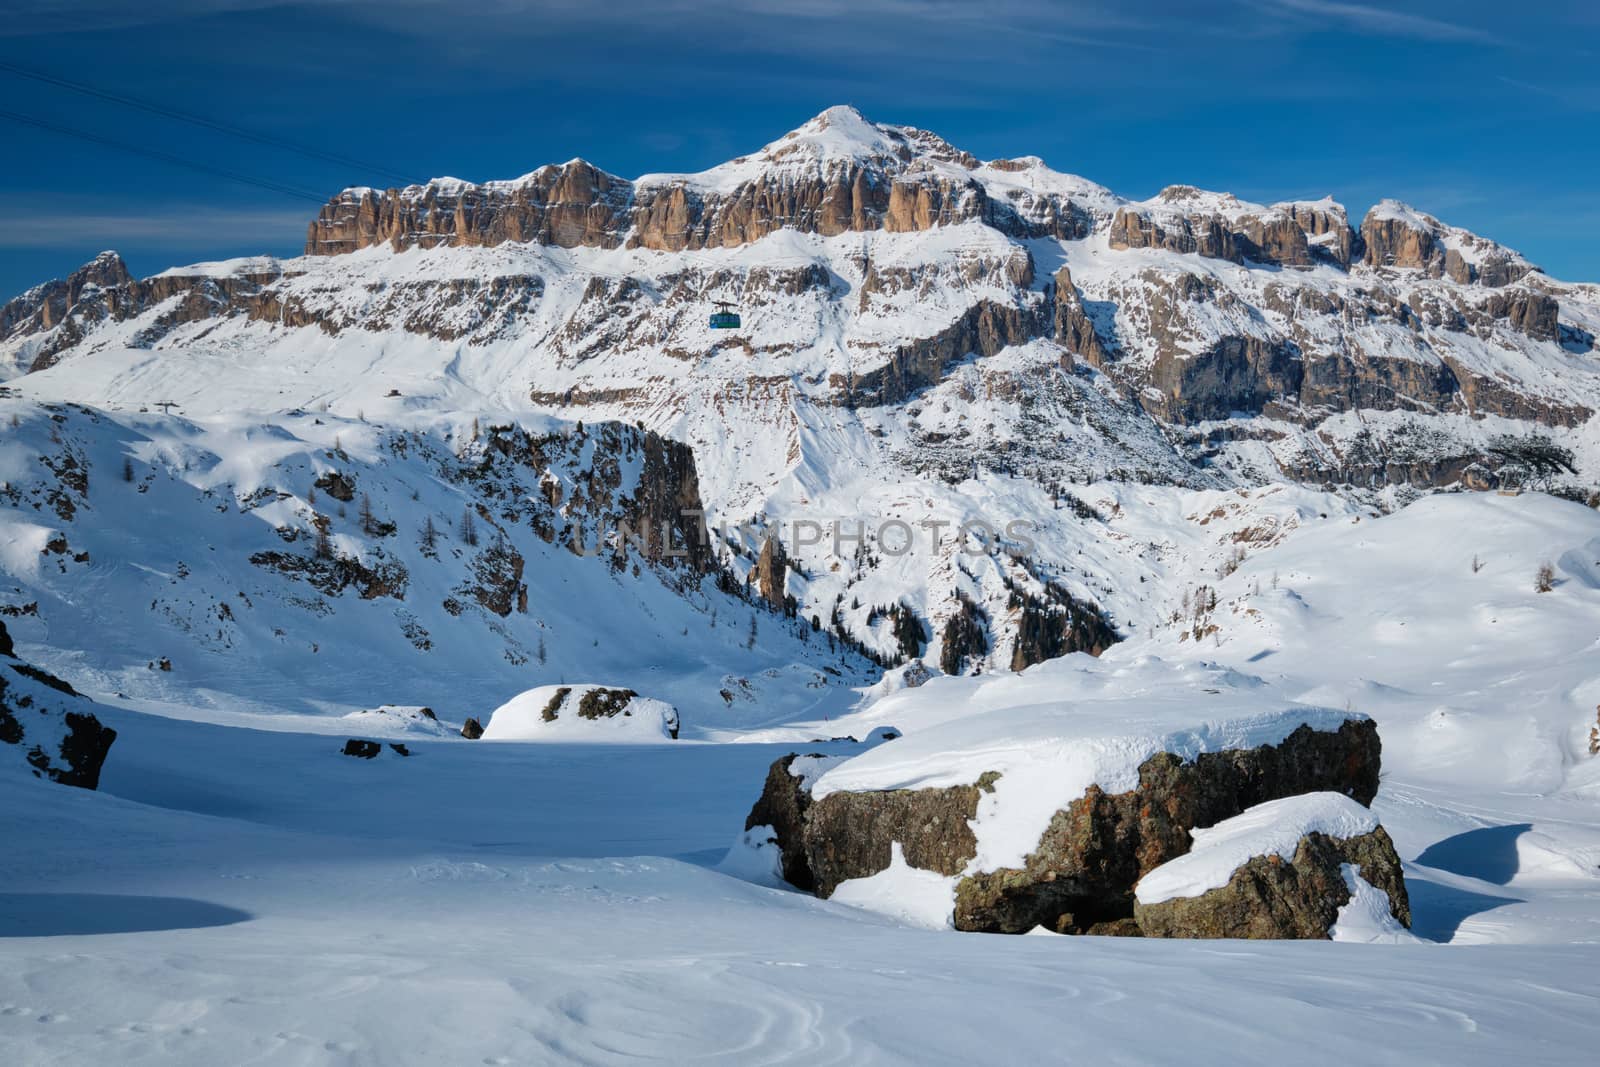 Ski resort in Dolomites, Italy by dimol